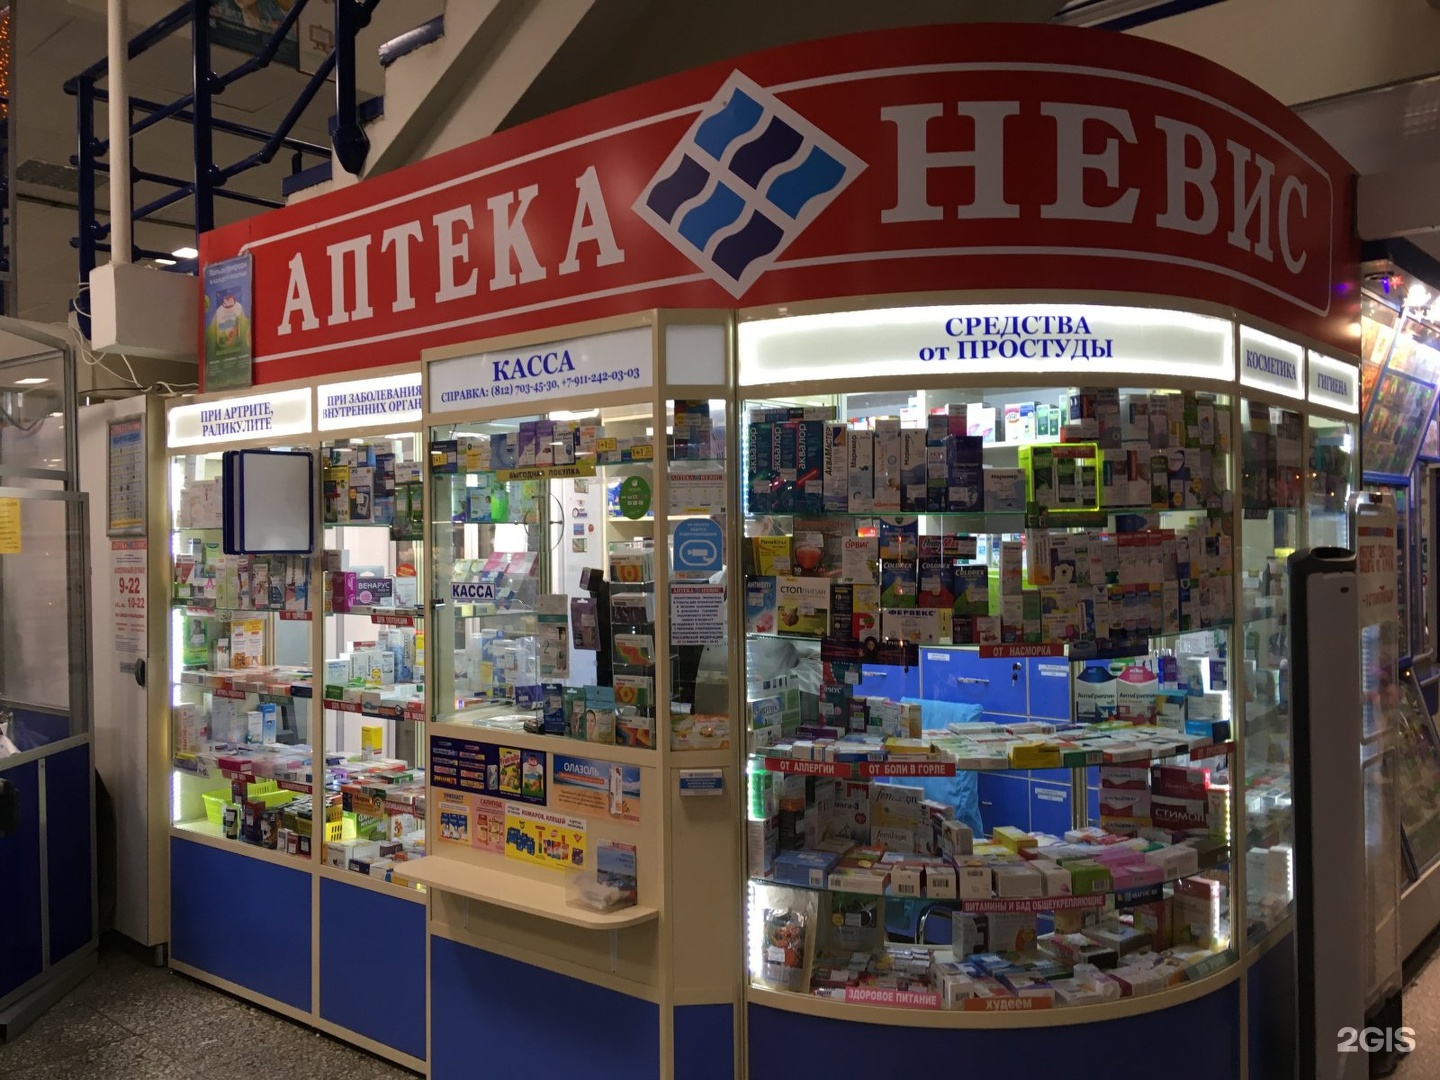 Аптека Невис Светогорск